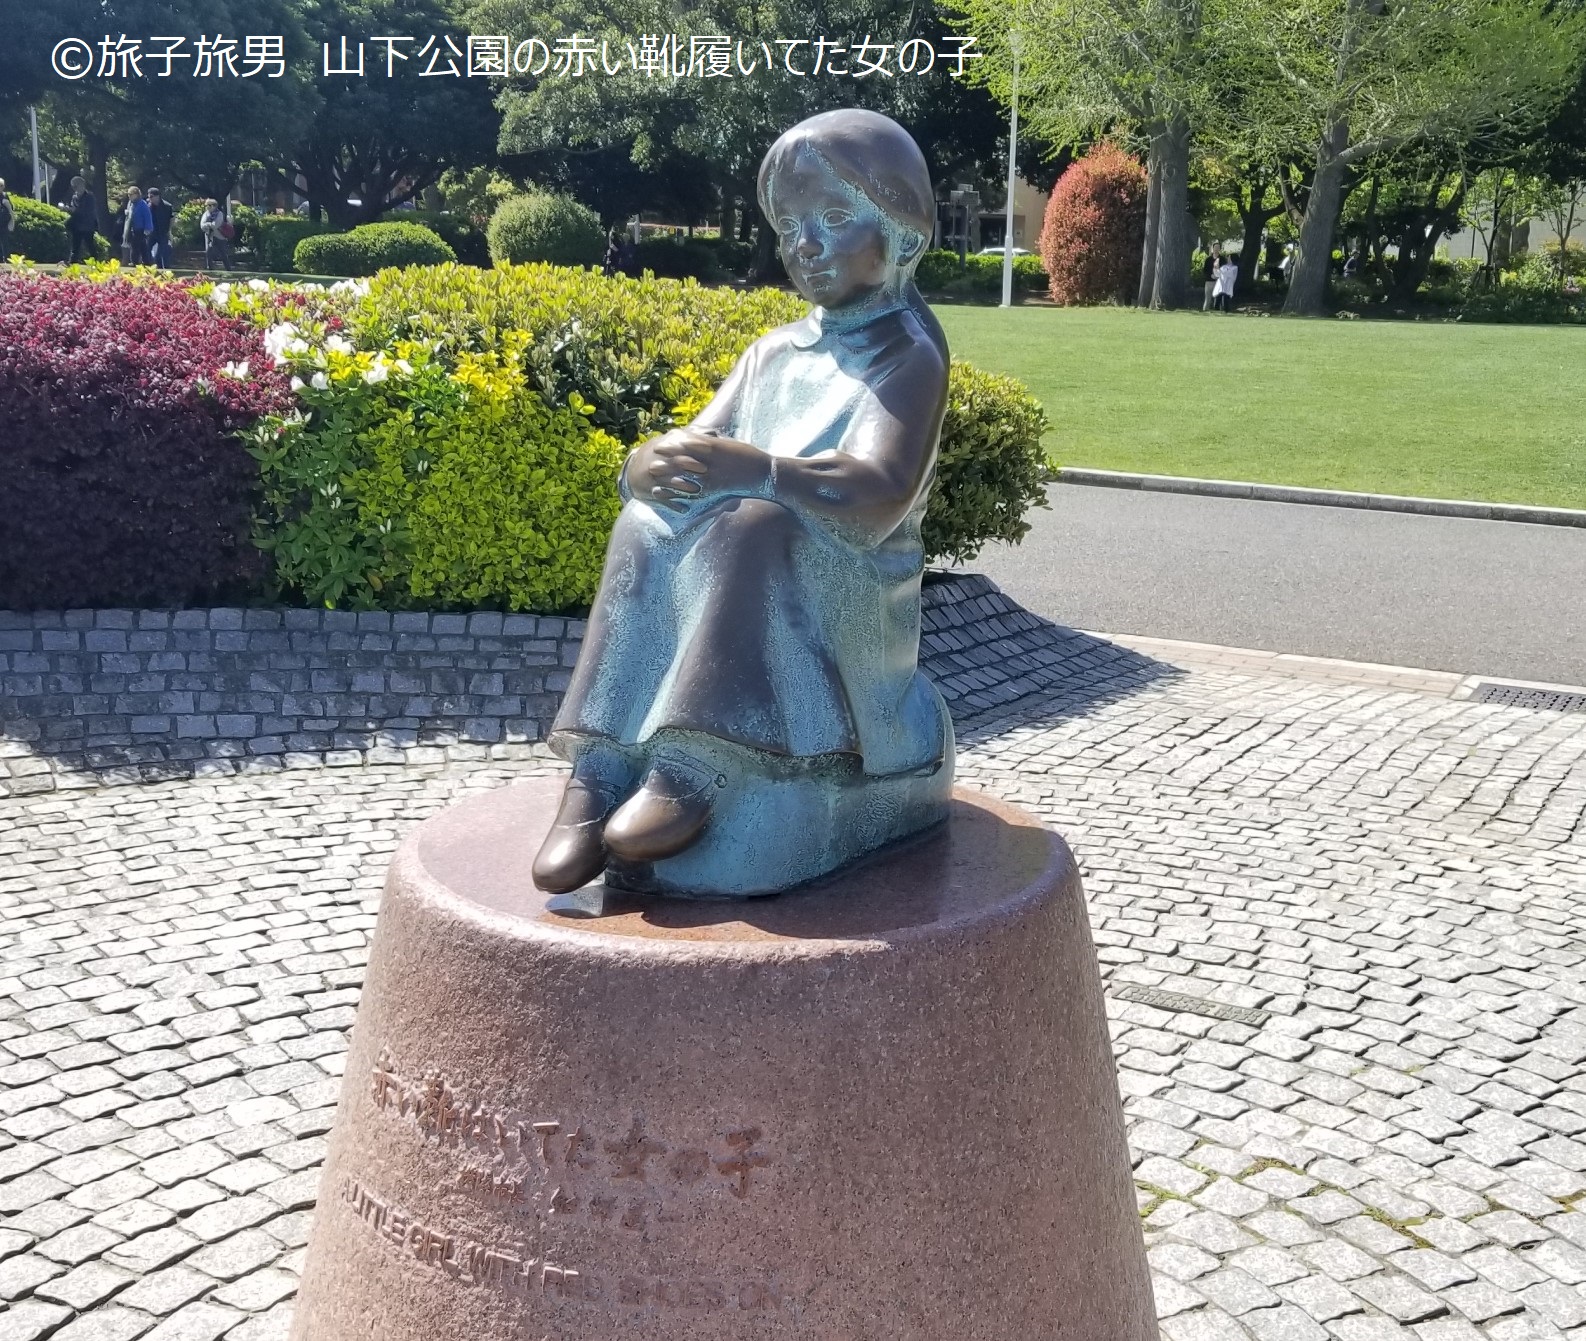 日本各地に点在する 赤い靴履いてた女の子の像 の場所まとめ